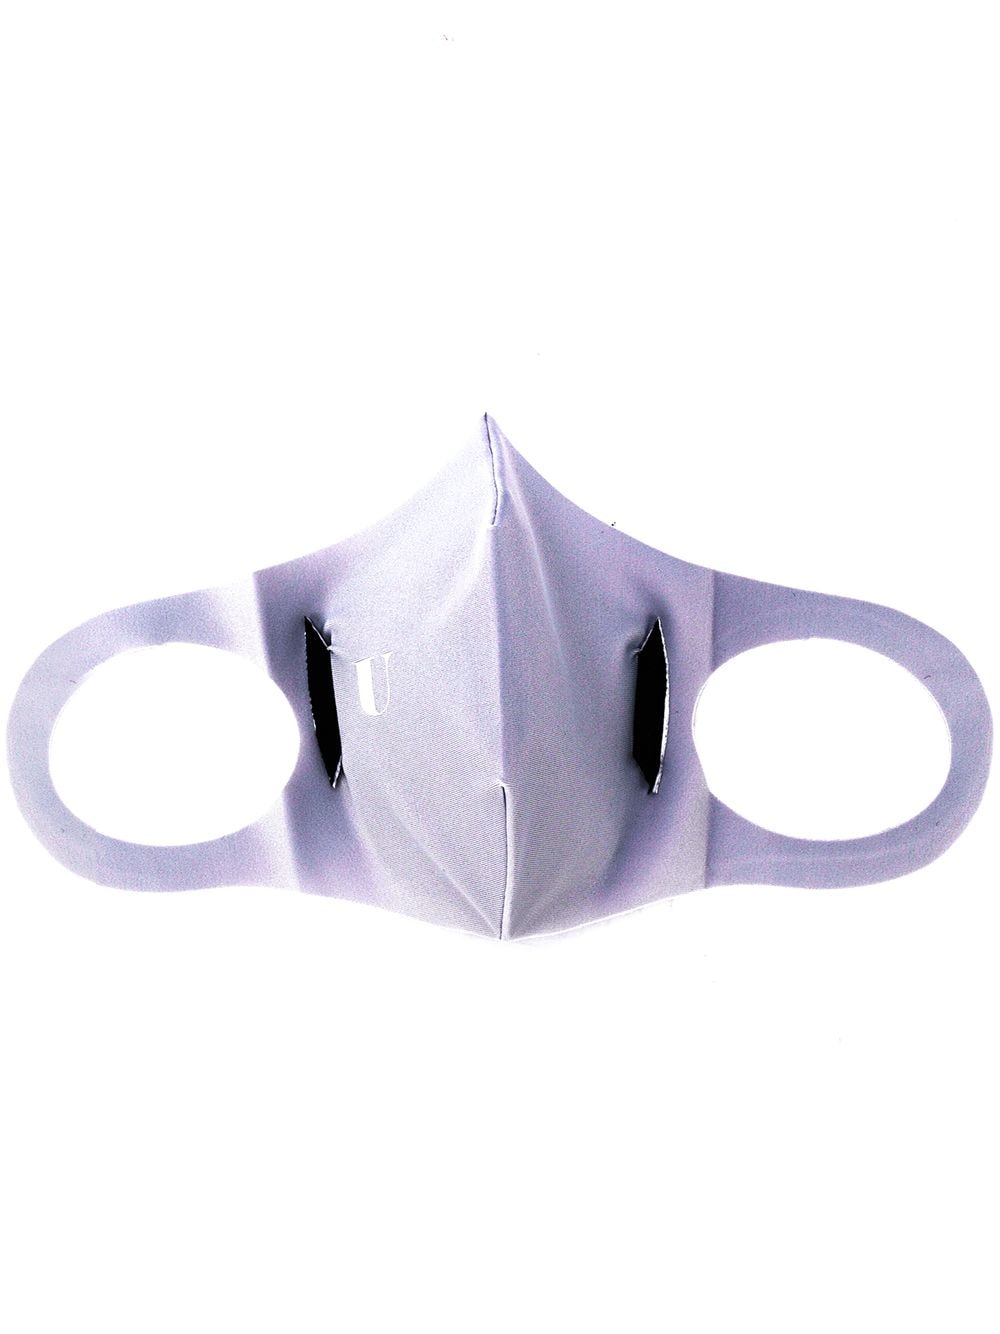 Image 1 of U-Mask Model 2.2 face mask